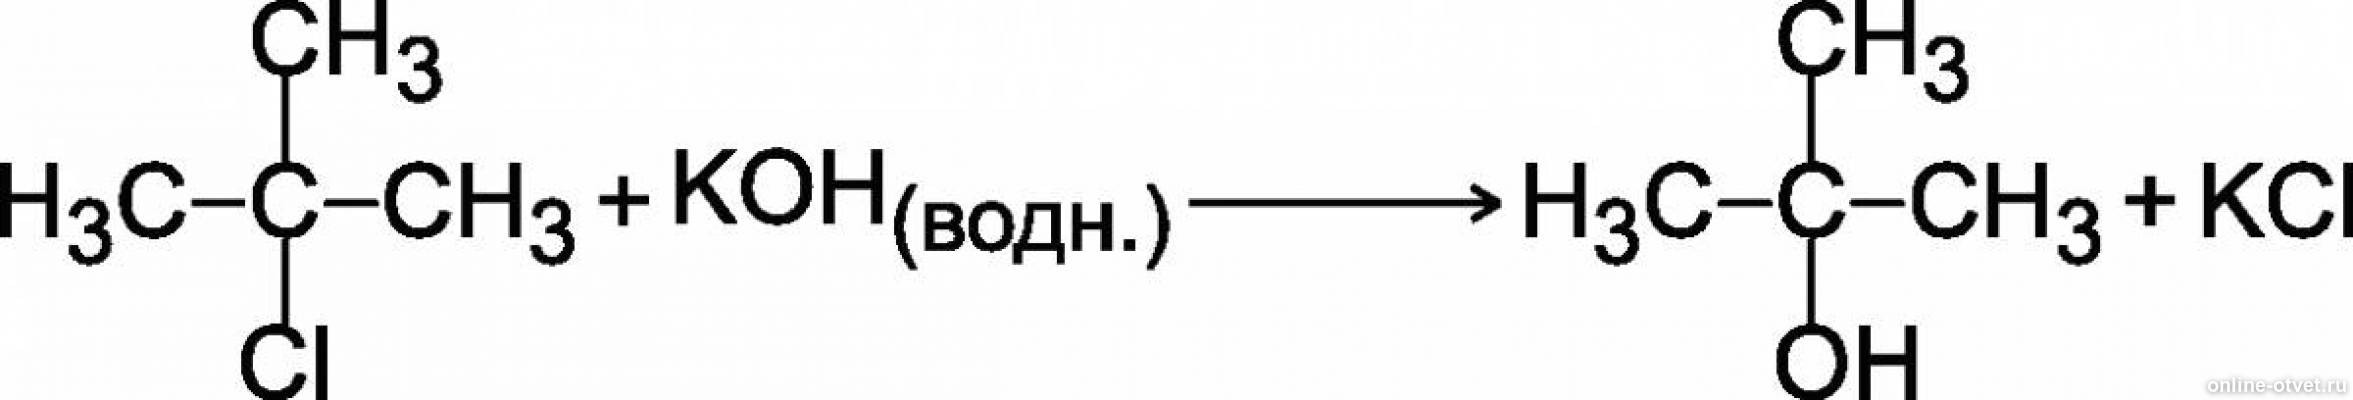 Бутан koh. 2 Метилпропан и хлор реакция. 2 Хлор 2 метилпропан NAOH. NAOH спиртовой раствор реакции.